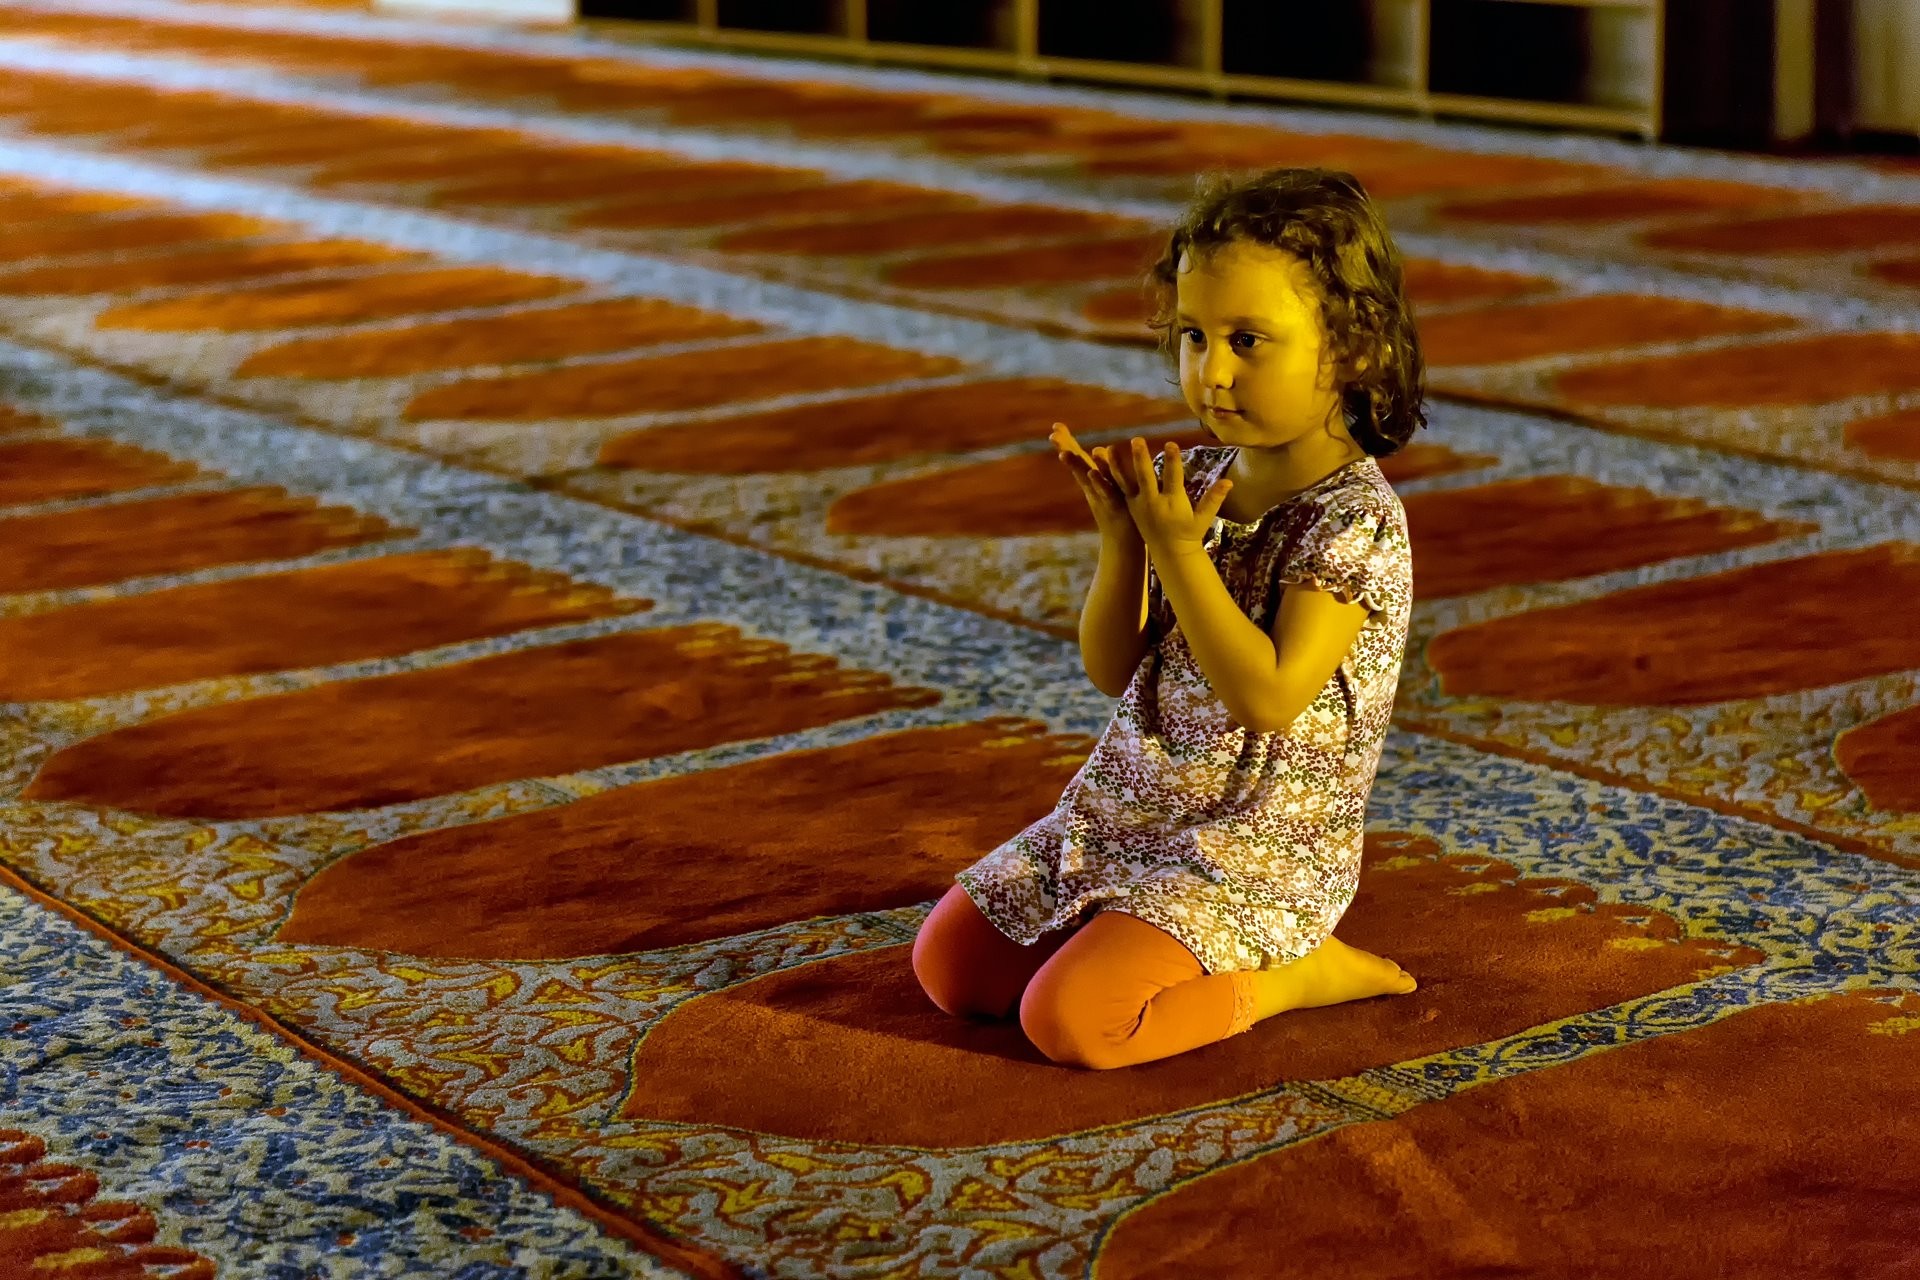 Wallpaper - Prayer Muslim , HD Wallpaper & Backgrounds